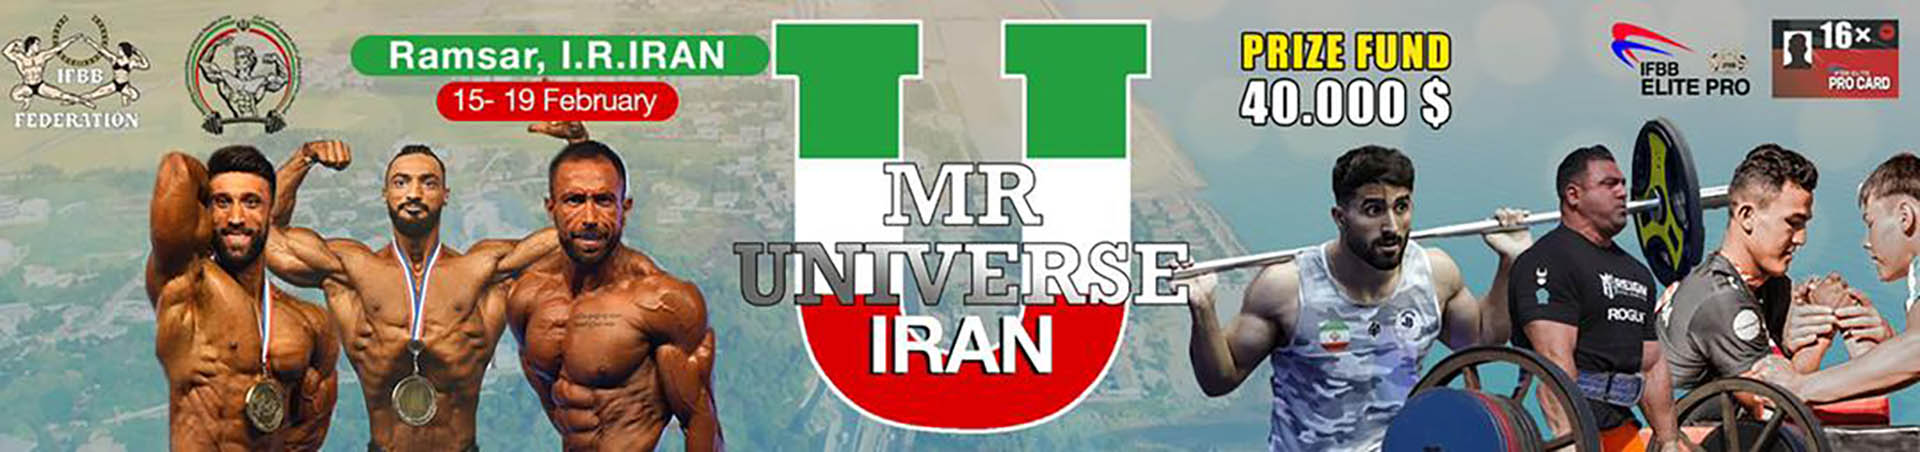 IFBB MR UNIVERSE IRAN IFBB MR UNIVERSE IRAN